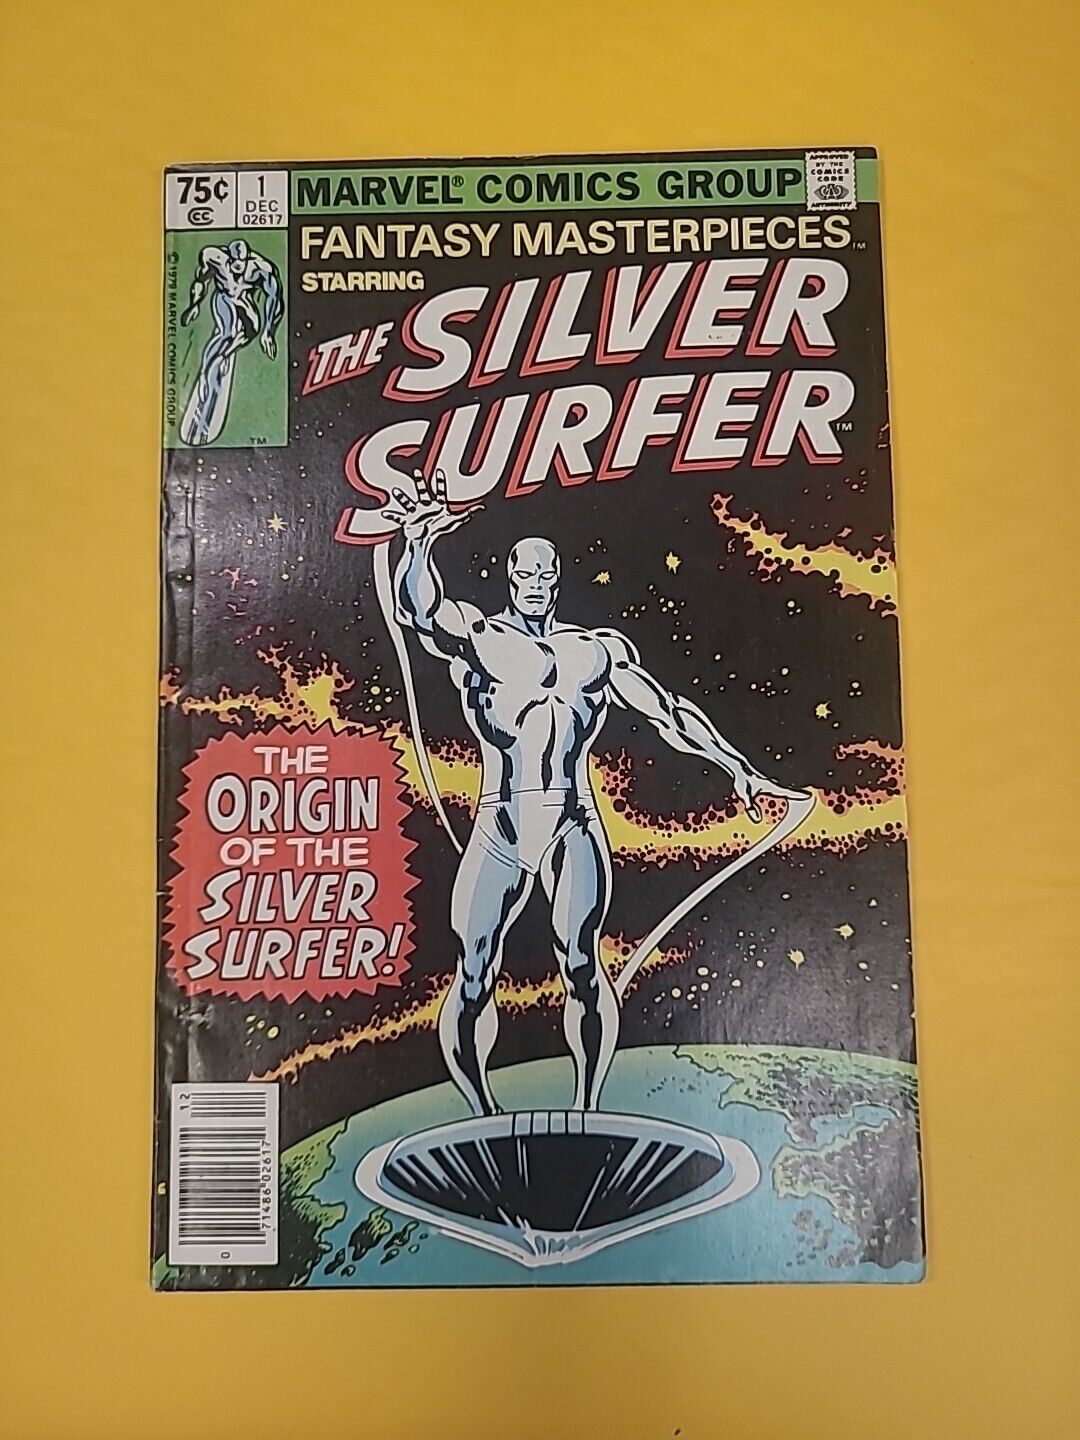 NM 9.2 Fantasy Masterpieces #1 Origin of the Silver Surfer Hi Grade 1979 Marvel